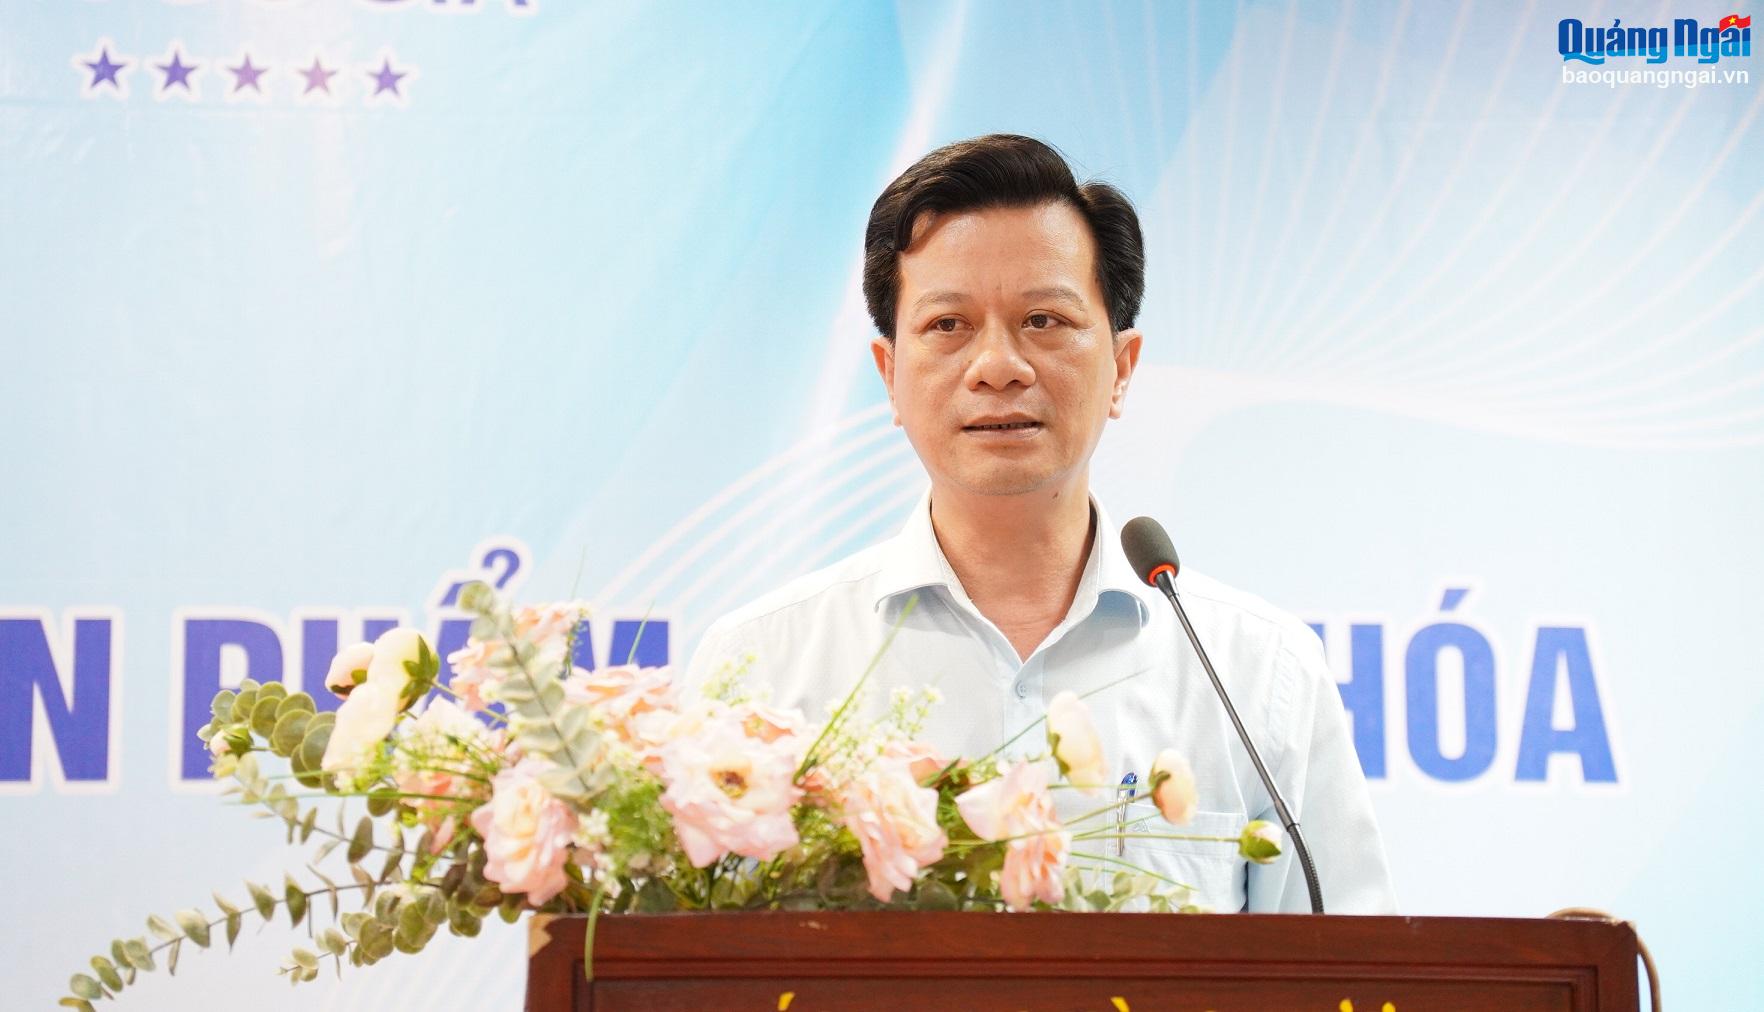 Phó Giám đốc Sở KH&CN Trần Công Hòa phát biểu khai mạc khóa đào tạo.